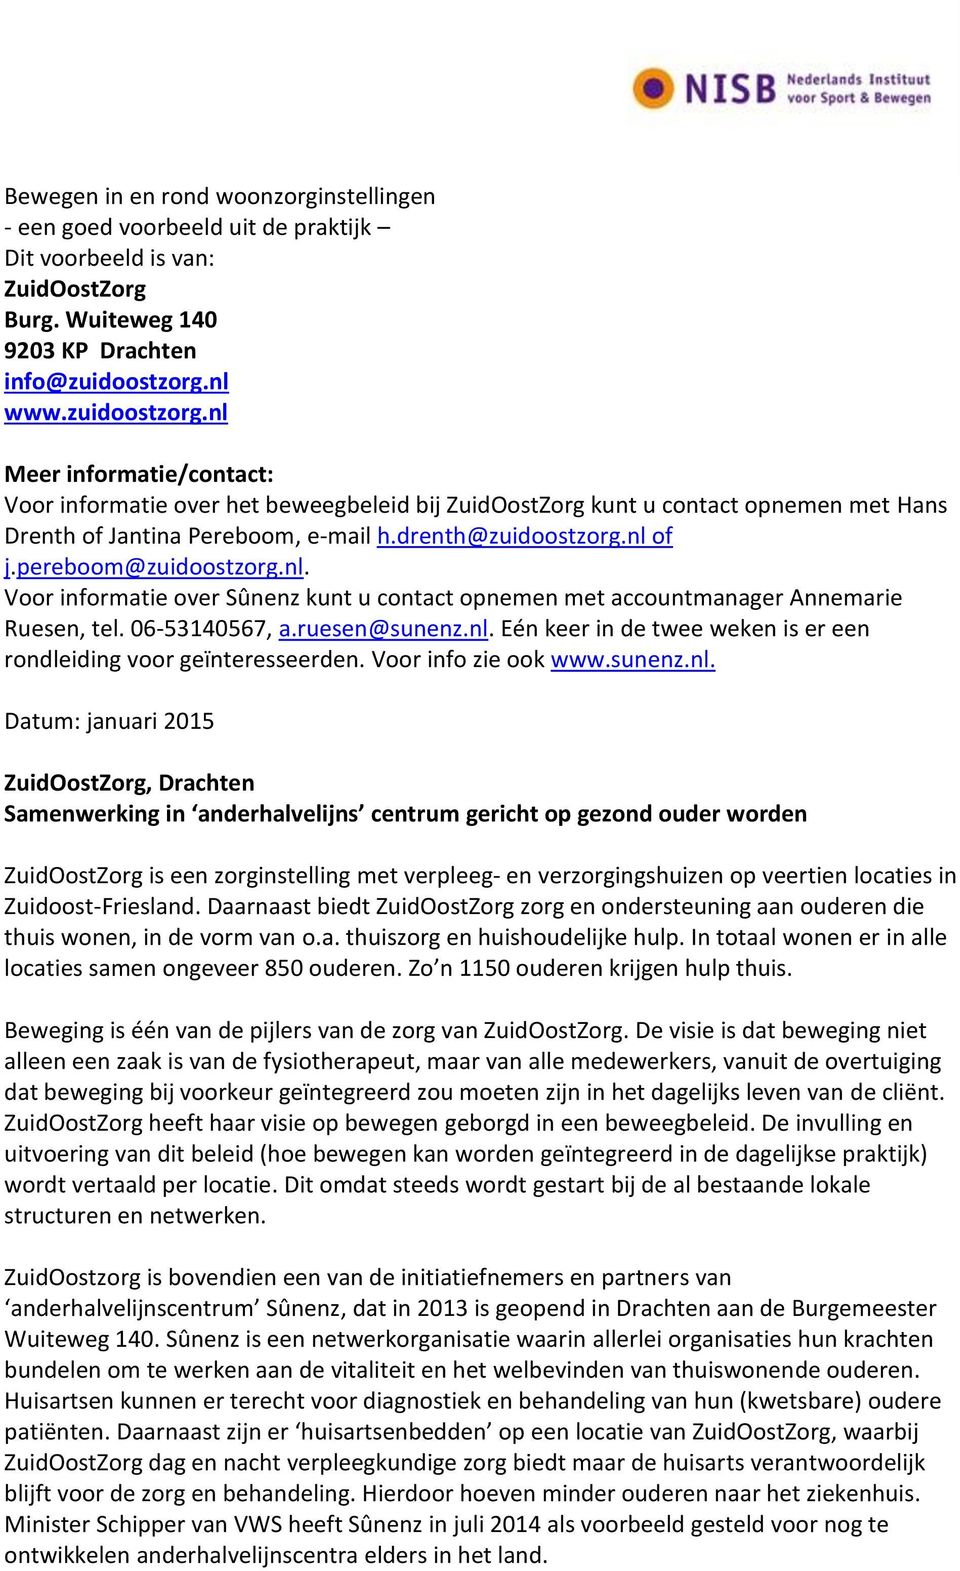 pereboom@zuidoostzorg.nl. Voor informatie over Sûnenz kunt u contact opnemen met accountmanager Annemarie Ruesen, tel. 06-53140567, a.ruesen@sunenz.nl. Eén keer in de twee weken is er een rondleiding voor geïnteresseerden.